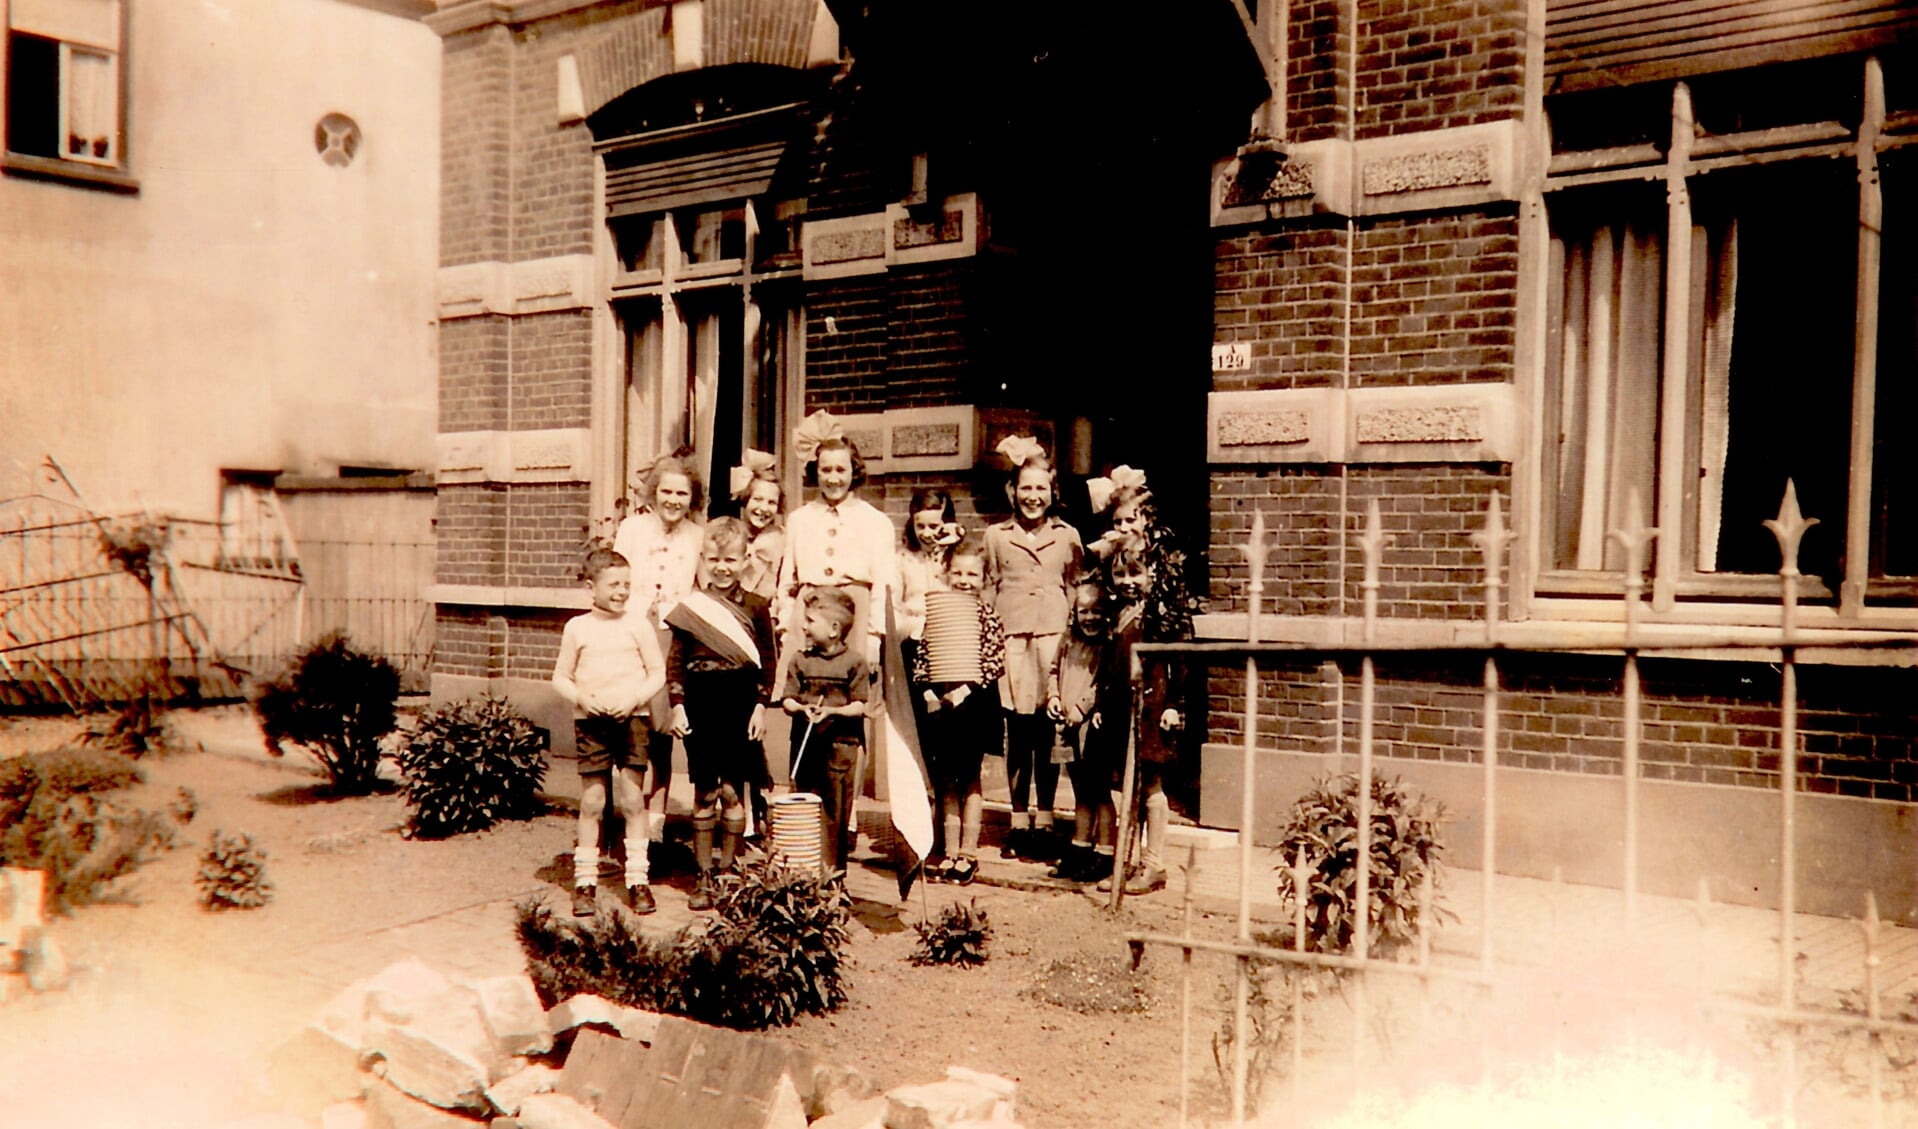 Voor het huis van Cas van Vroonhoven kijken kinderen naar de optocht ter herdenking van de bevrijding in september 1944. Rechts van de deur is het oude adres van vóór 1948 (A129) zichtbaar. (12533)